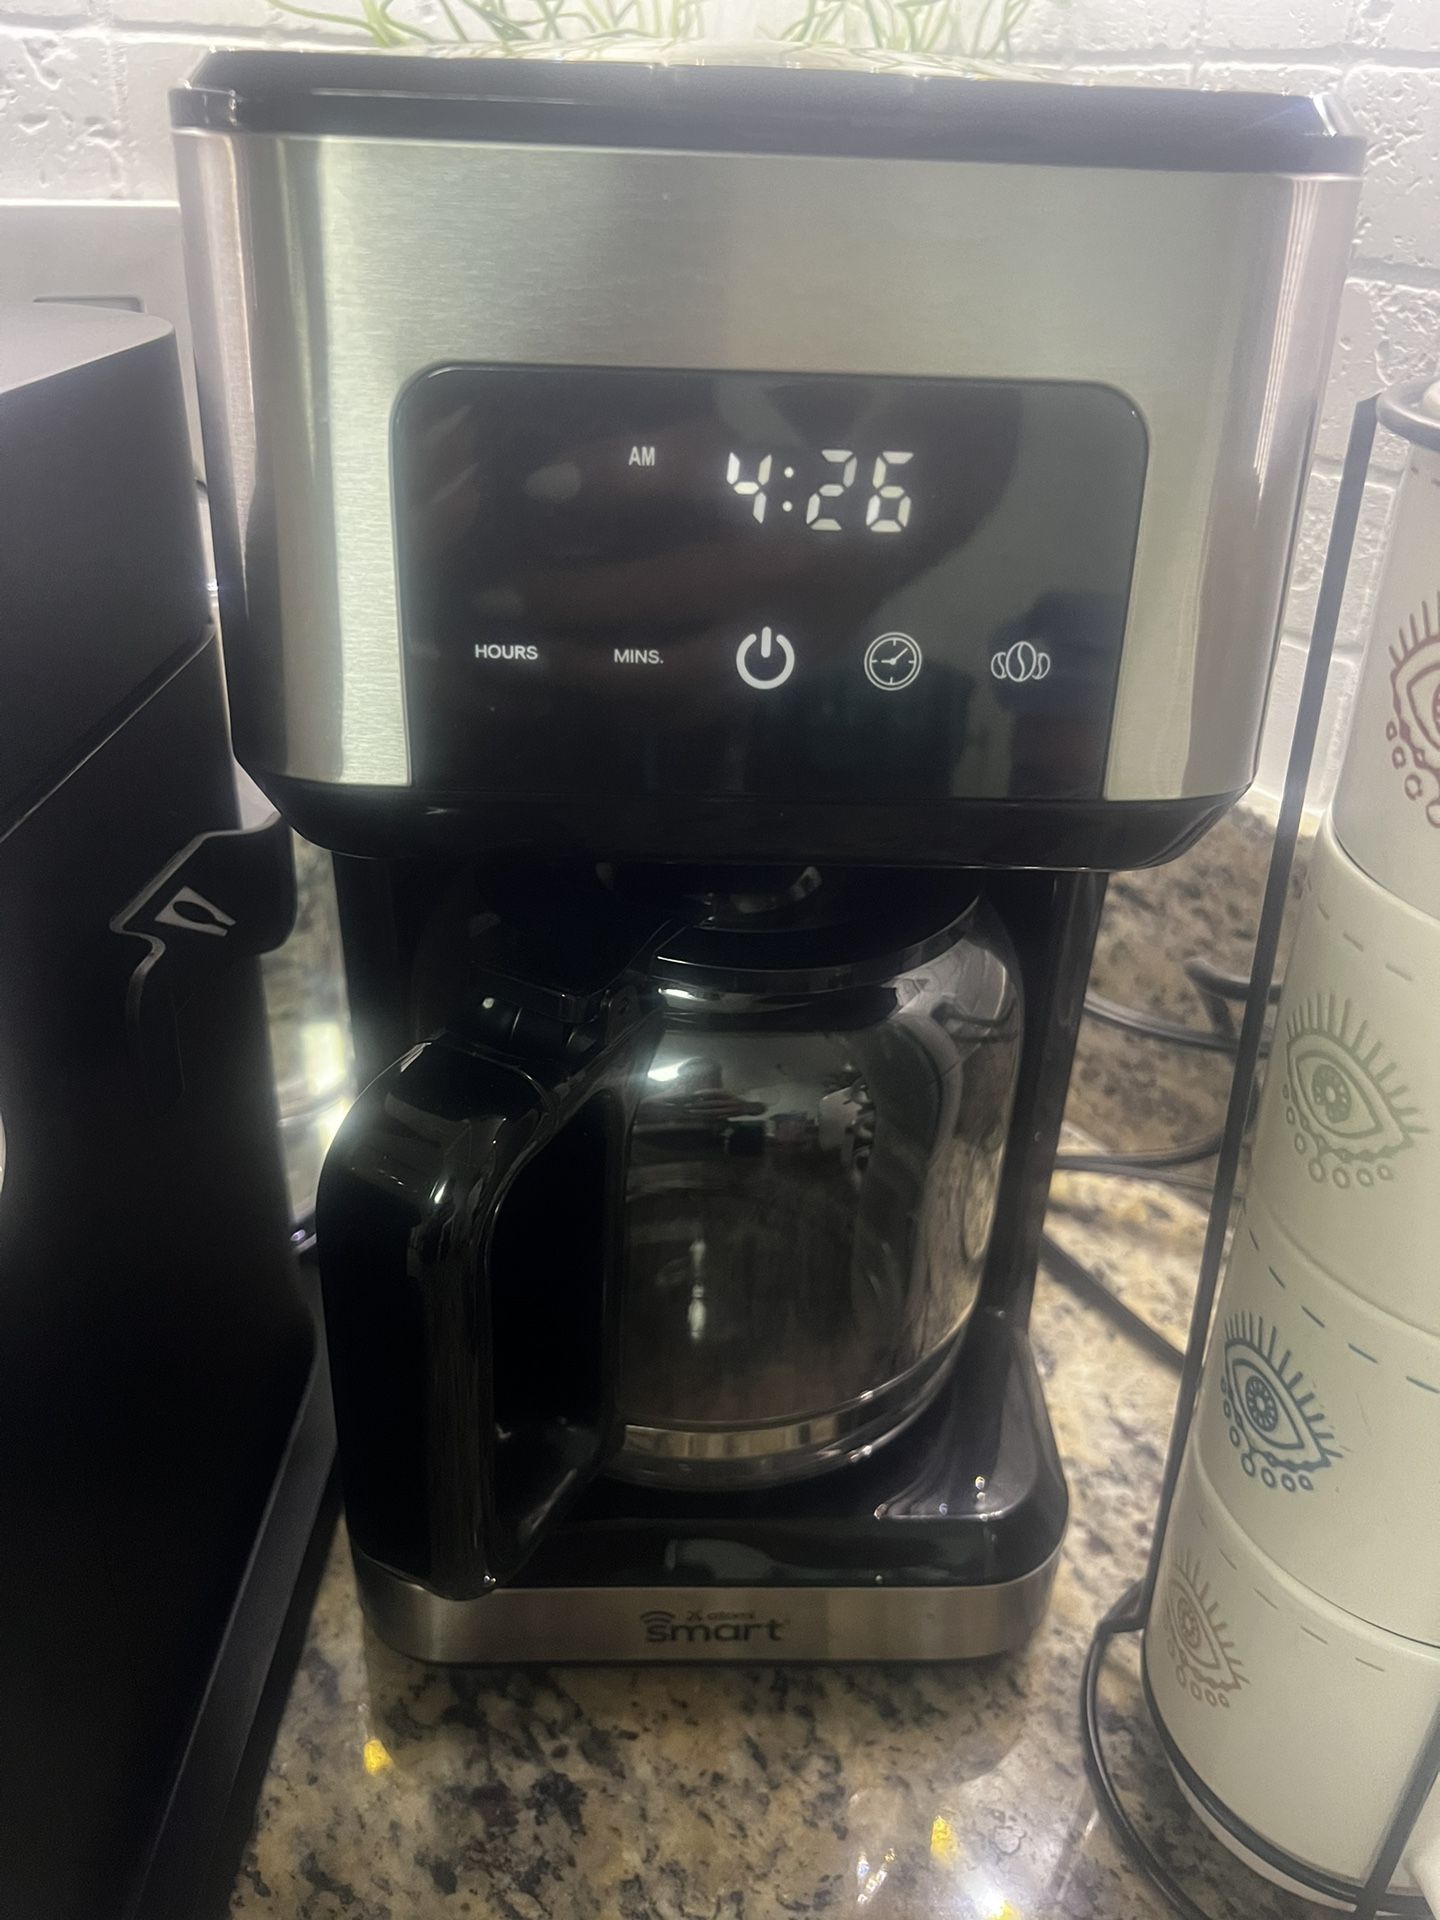 Smart WIFI coffee Maker